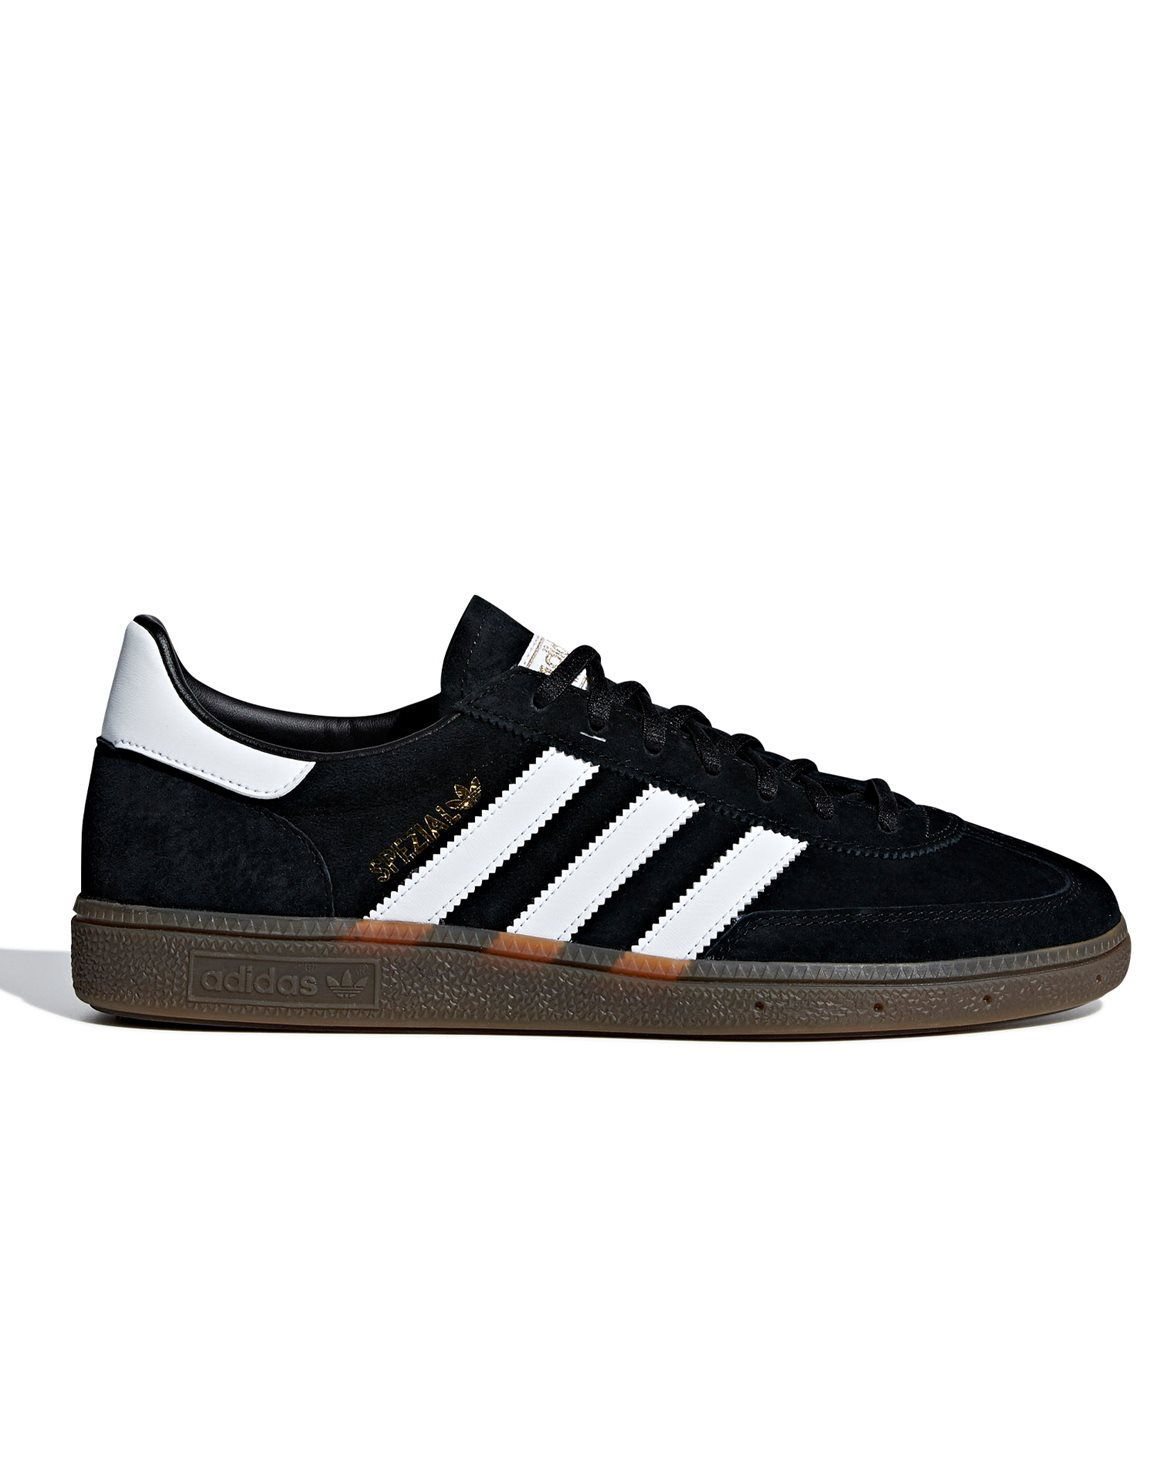 Adidas Originals Handball Spezial Shoes Core Black/Cloud White/Gum5